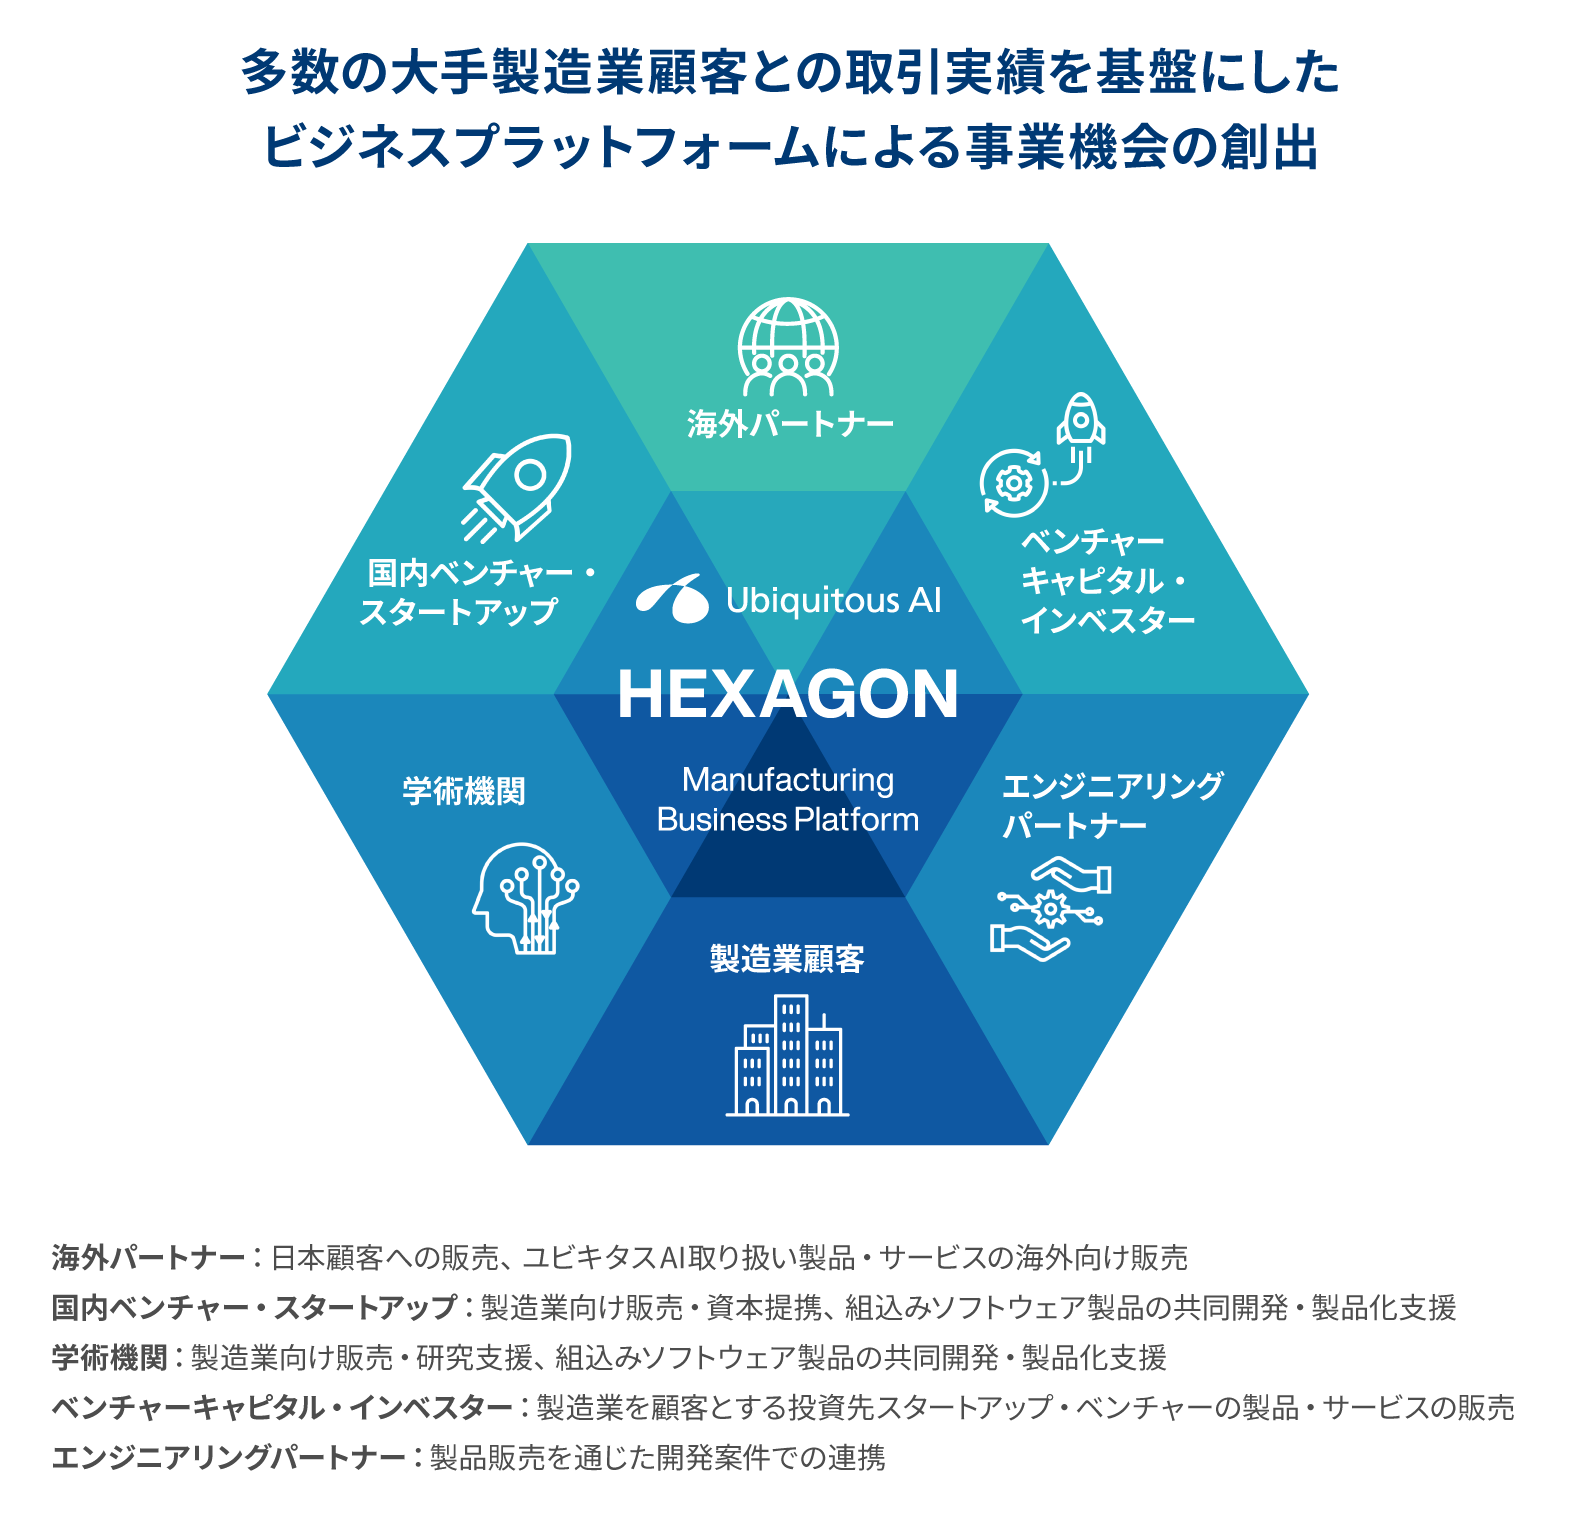 製造業向けビジネスプラットフォーム「HEXAGON」